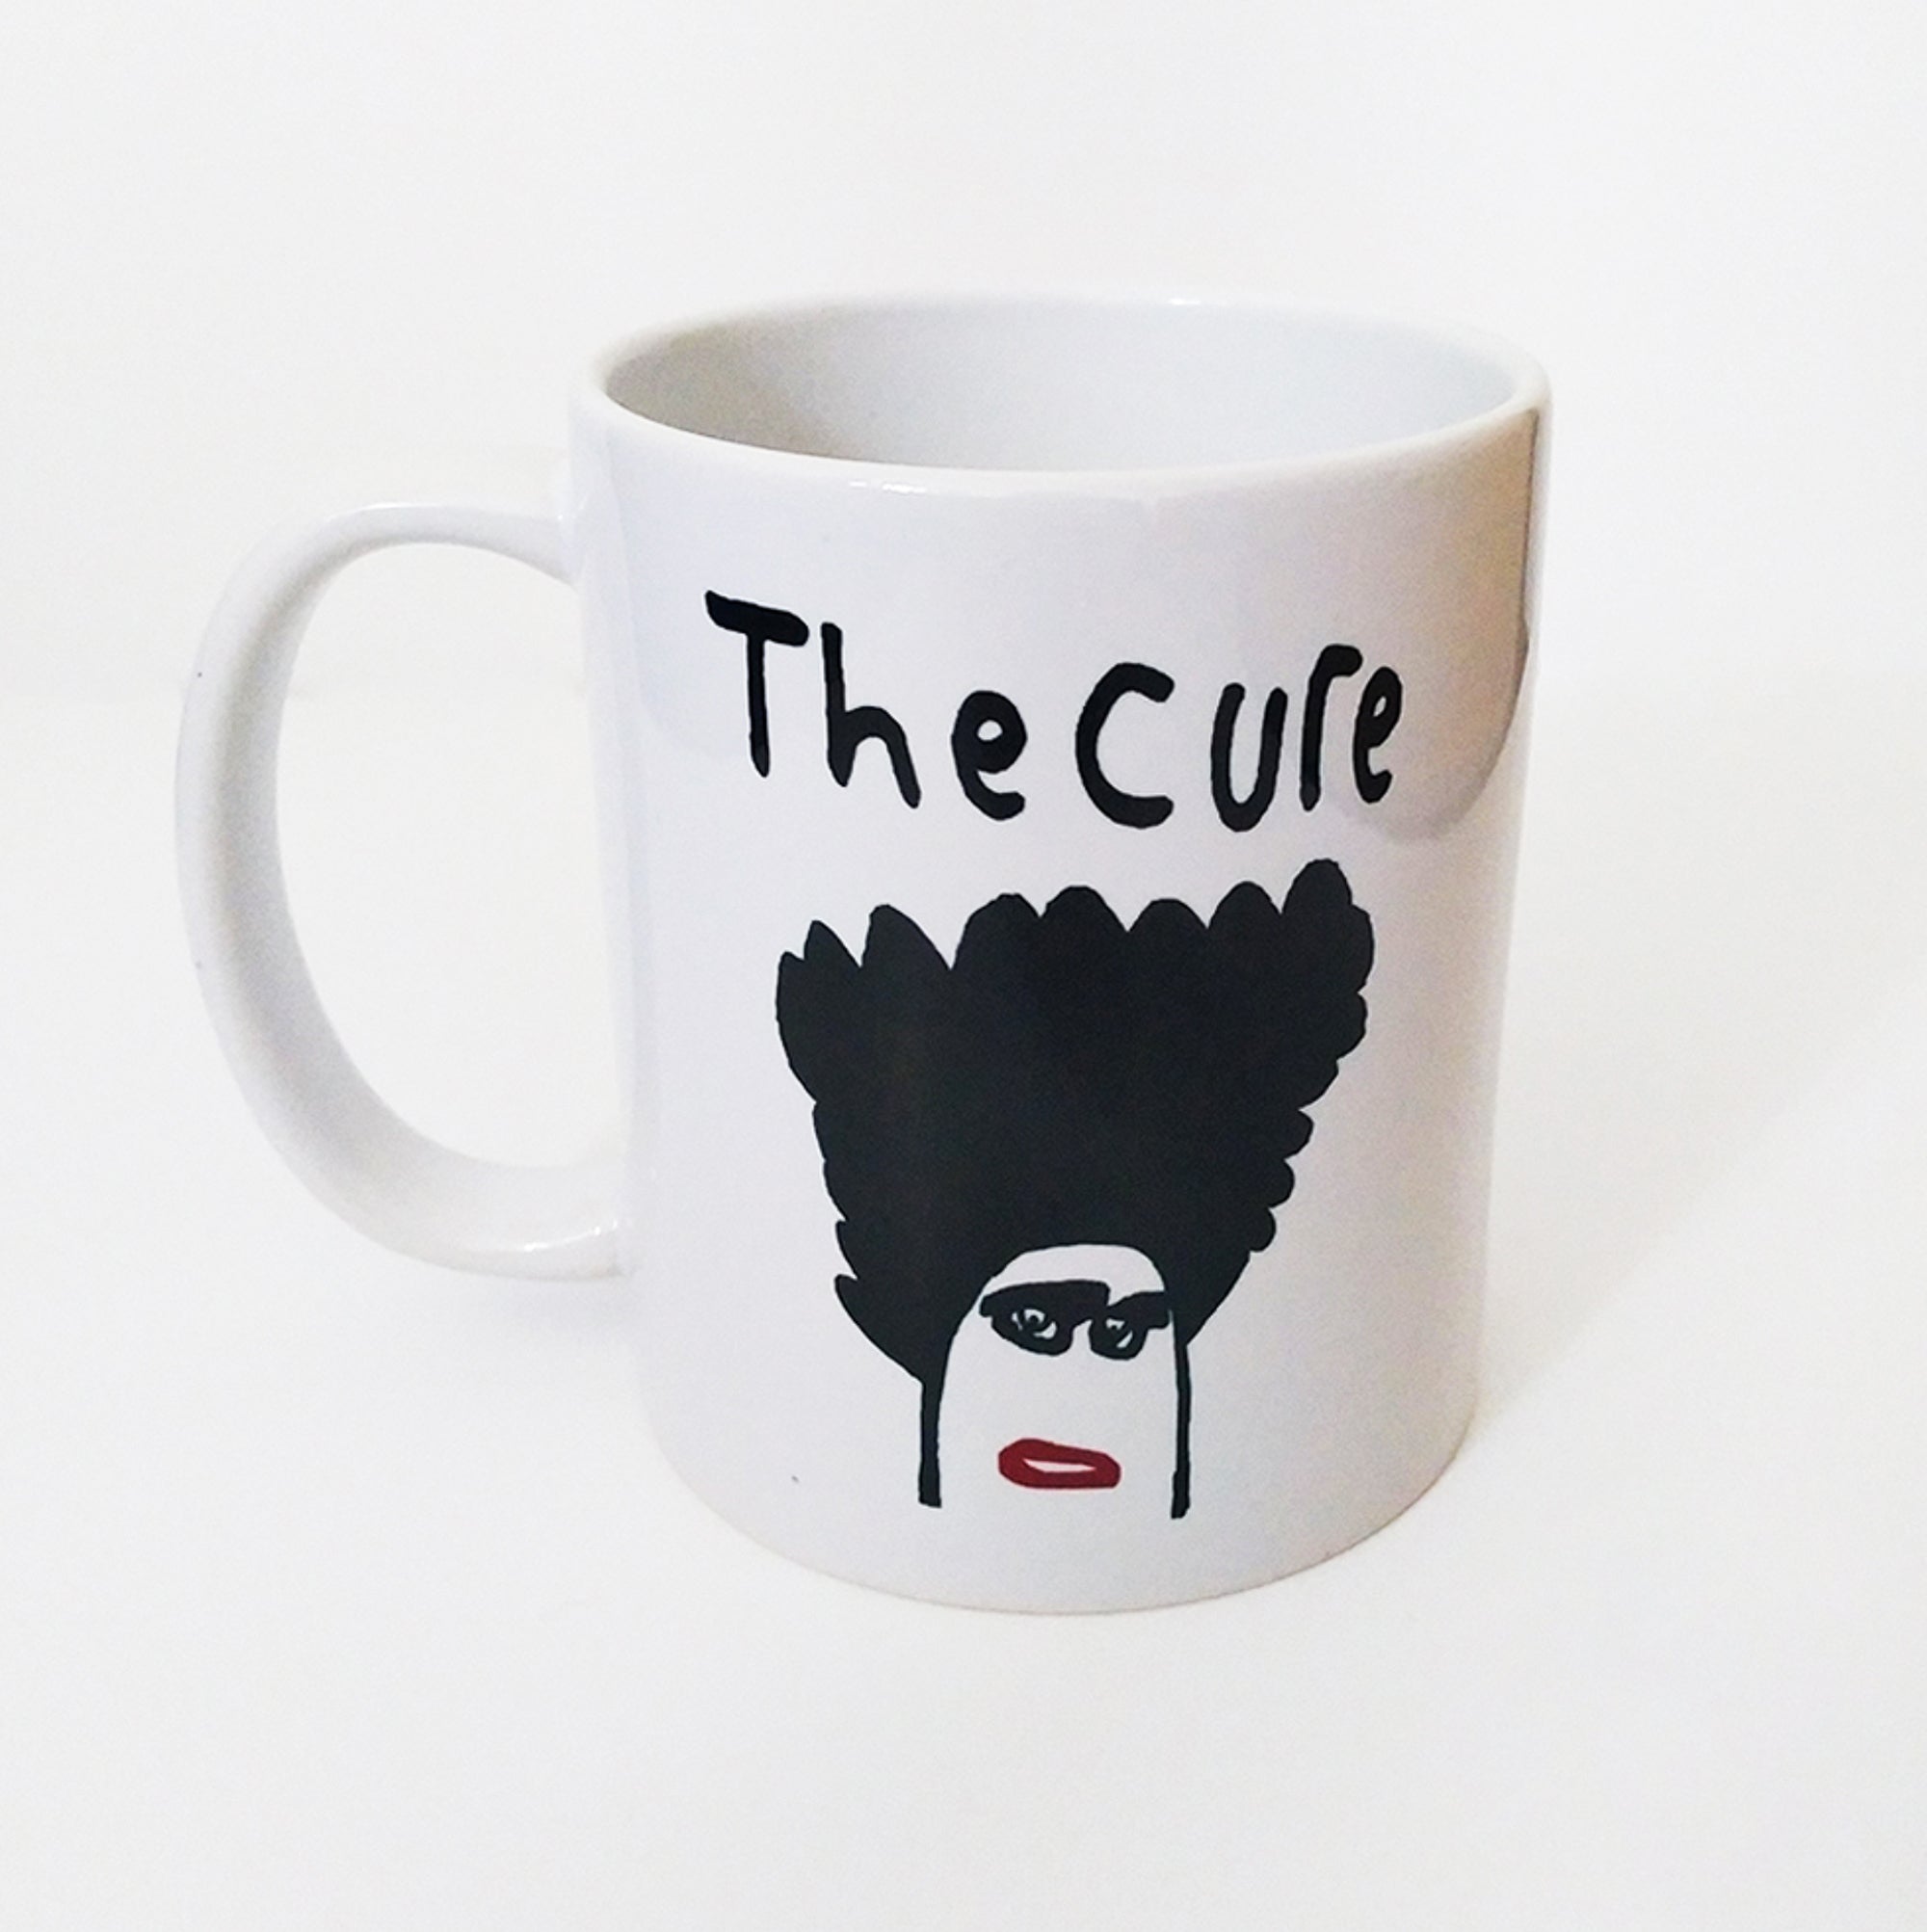 The Cure mug